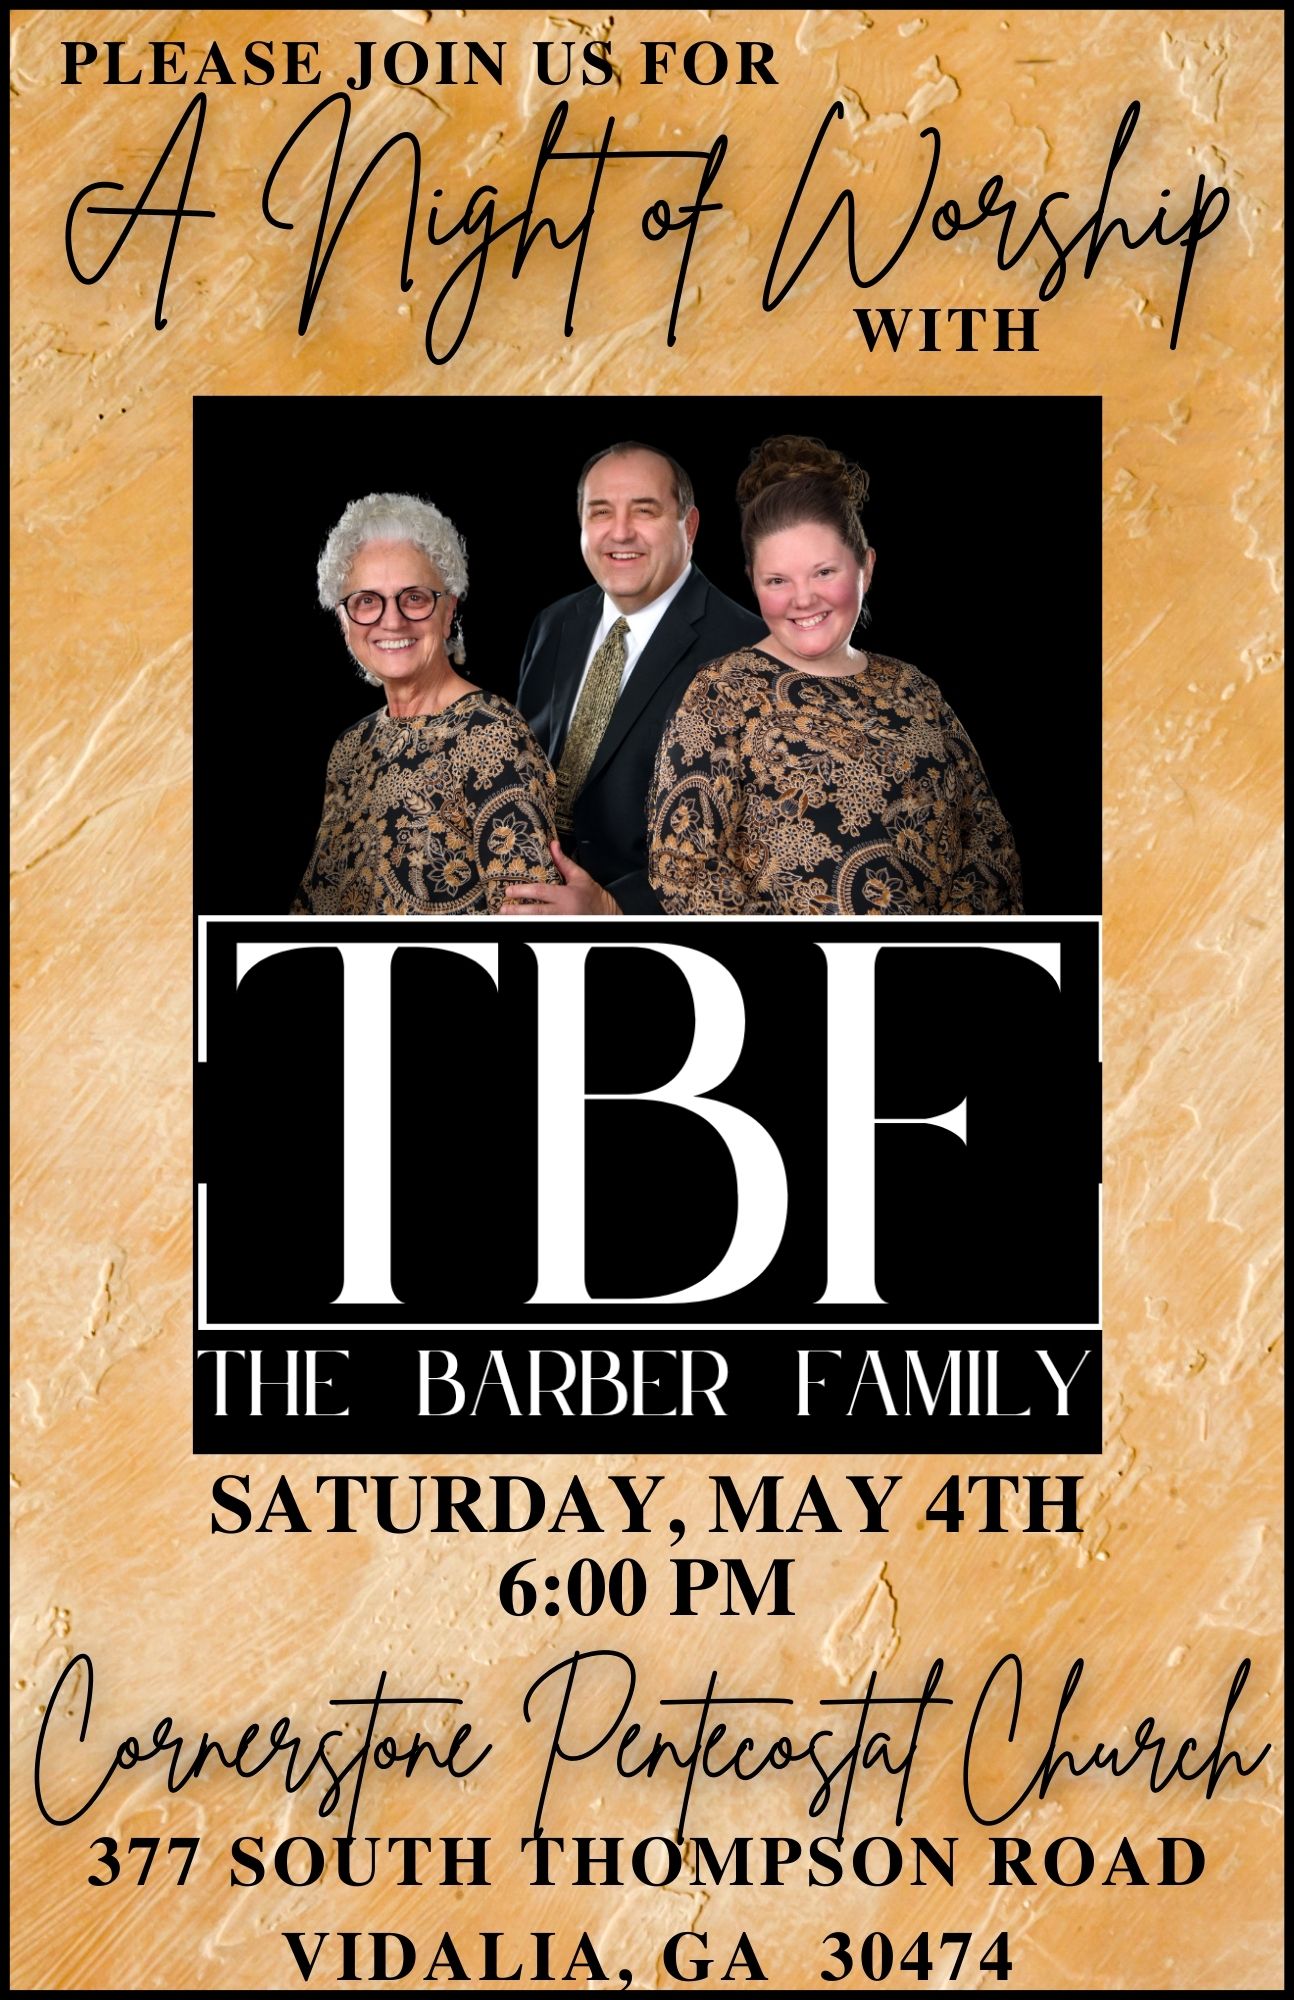 May 4--The Barber Family in Vidalia